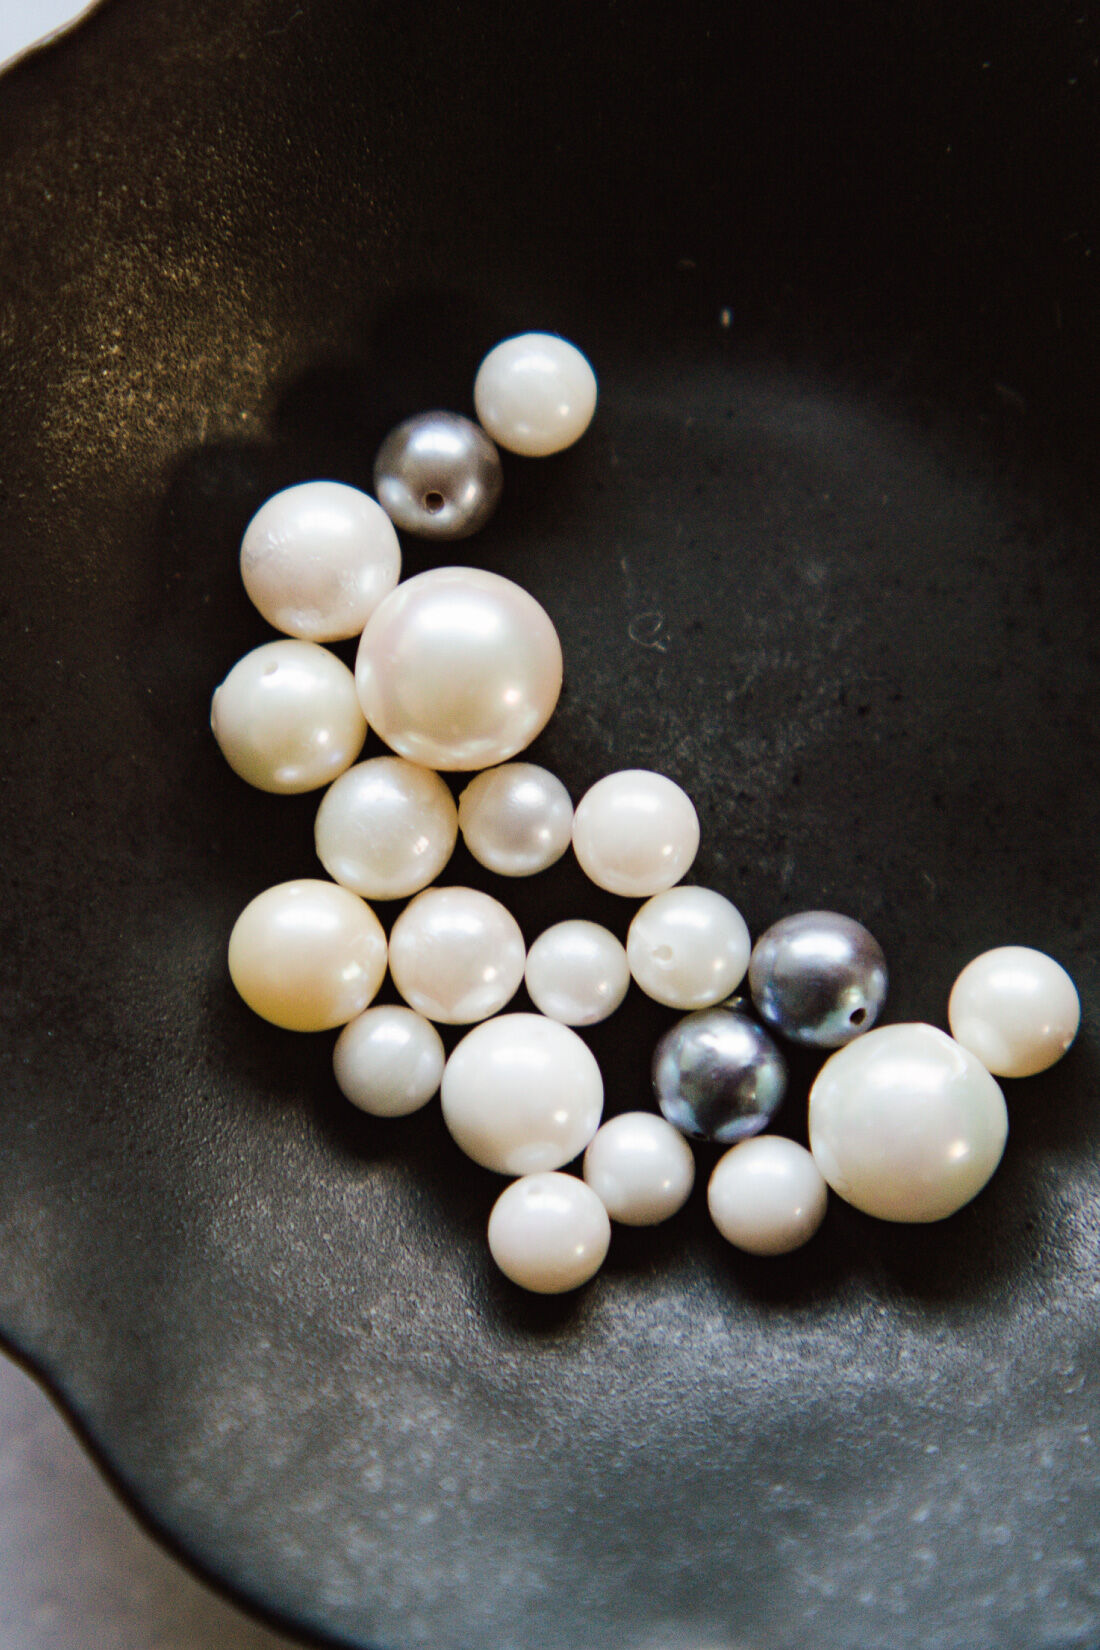 Couturier|自然の造形を愉しむ 日本の海で育った アコヤバロック真珠の会|美しい輝きを持つまあるい形のアコヤバロックパールを厳選して毎月お届けします。